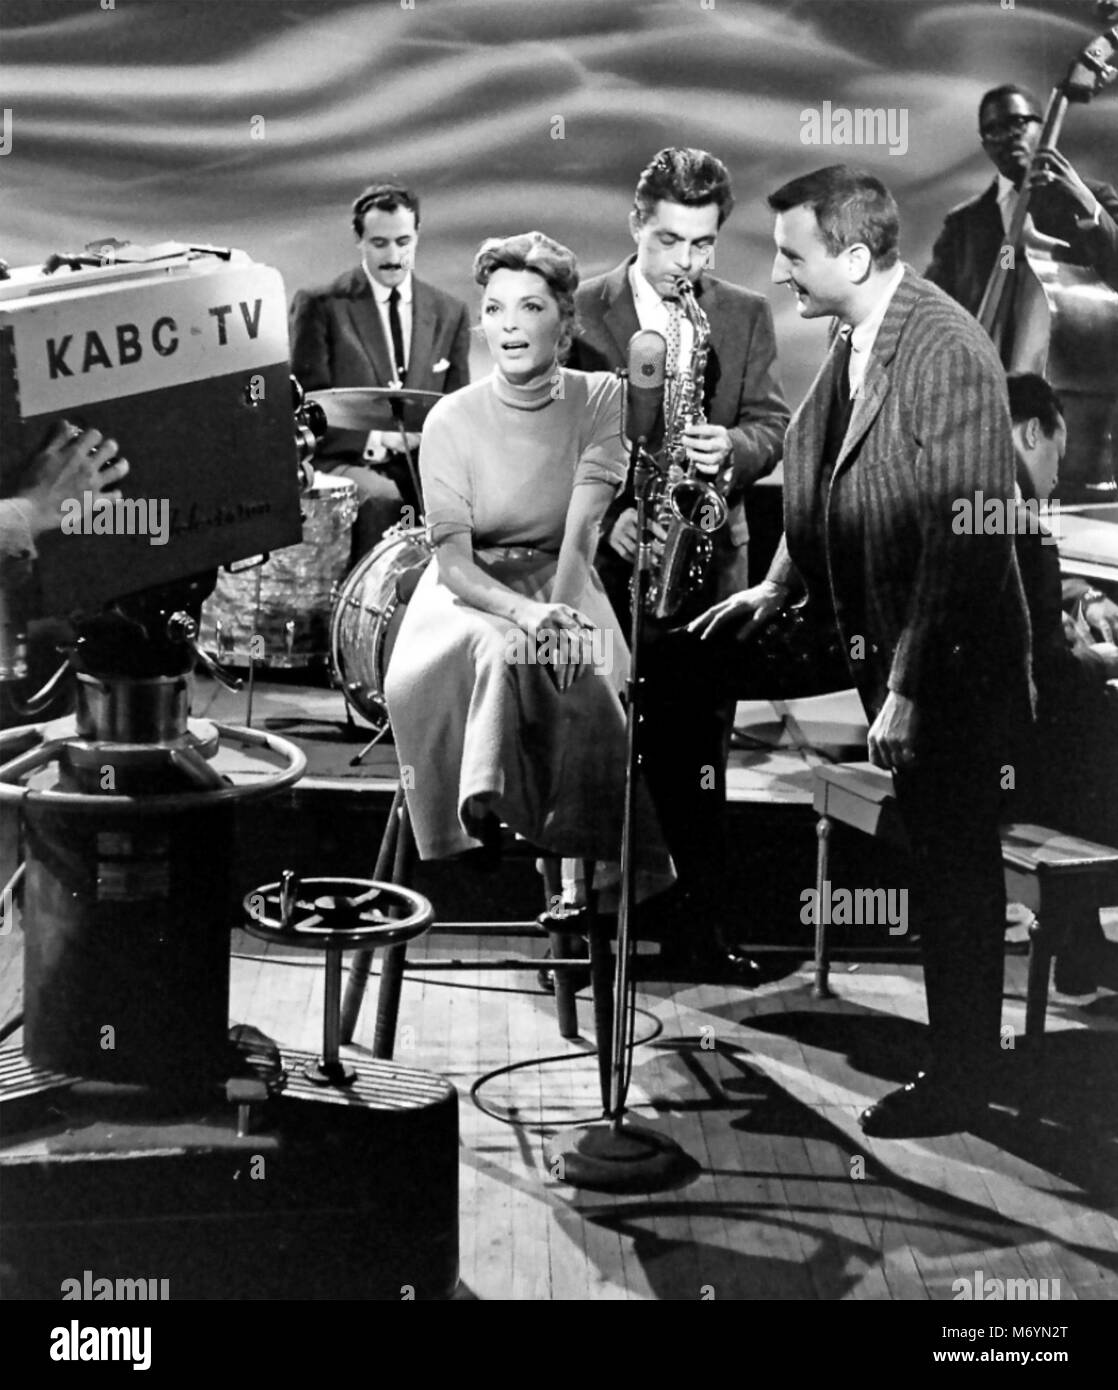 JULIE LONDON (1926-2000) Chanteuse de jazz et actrice du film sur l'American KABC TV show 'Stars de Jazz' en 1957 Banque D'Images